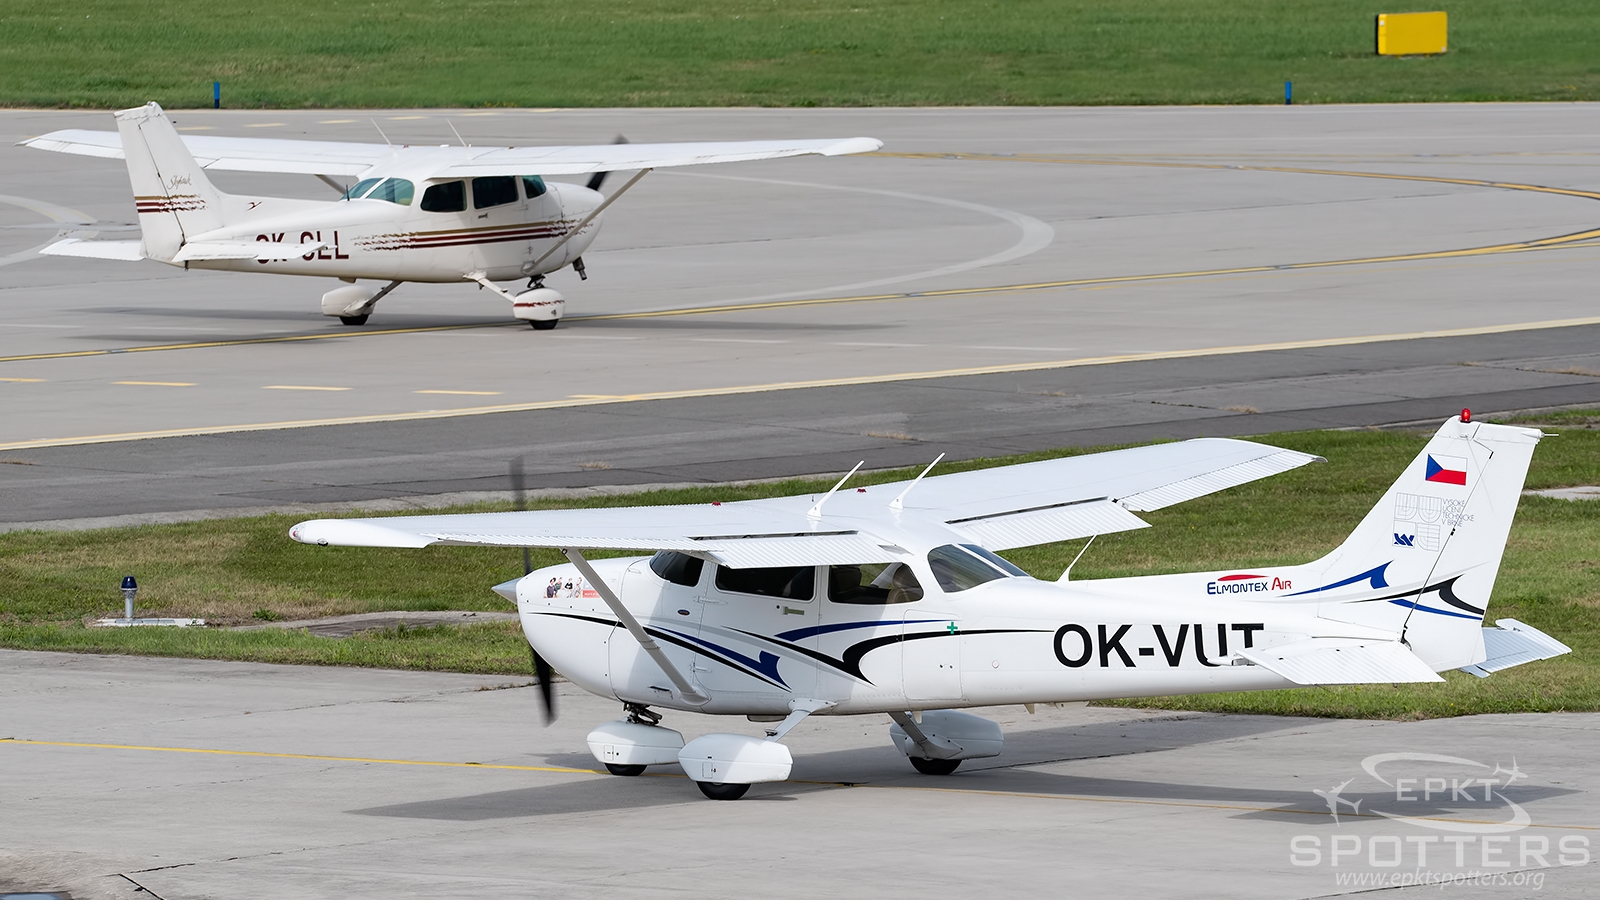 OK-VUT - Cessna 172 Skyhawk (Elmontex Air) / Leos Janacek Airport - Ostrava Czech Republic [LKMT/OSR]